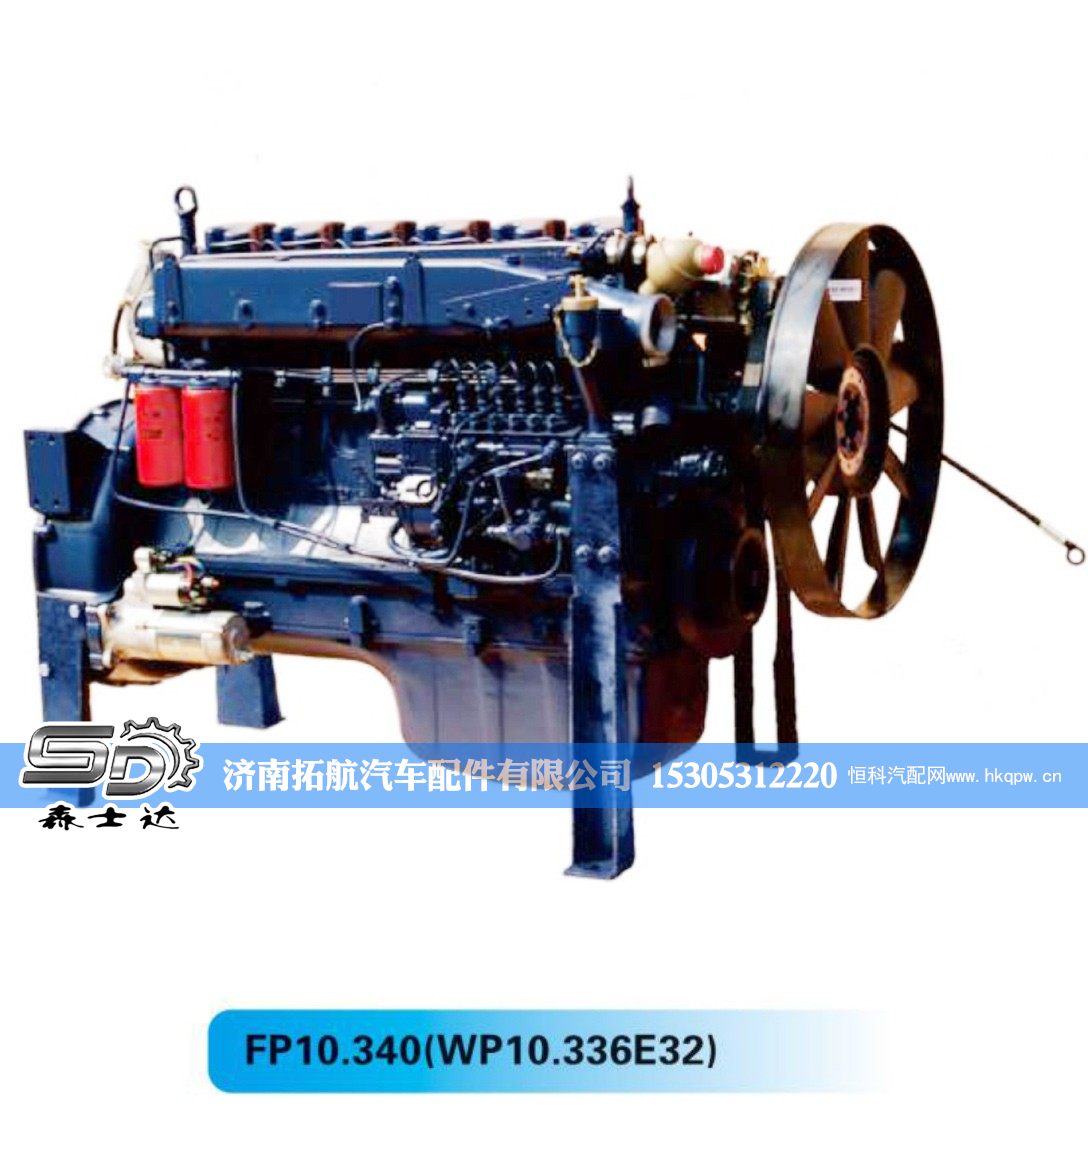 潍柴国ⅢWP10系列发动机【森士达】/FP10.340(WP10.336E32)